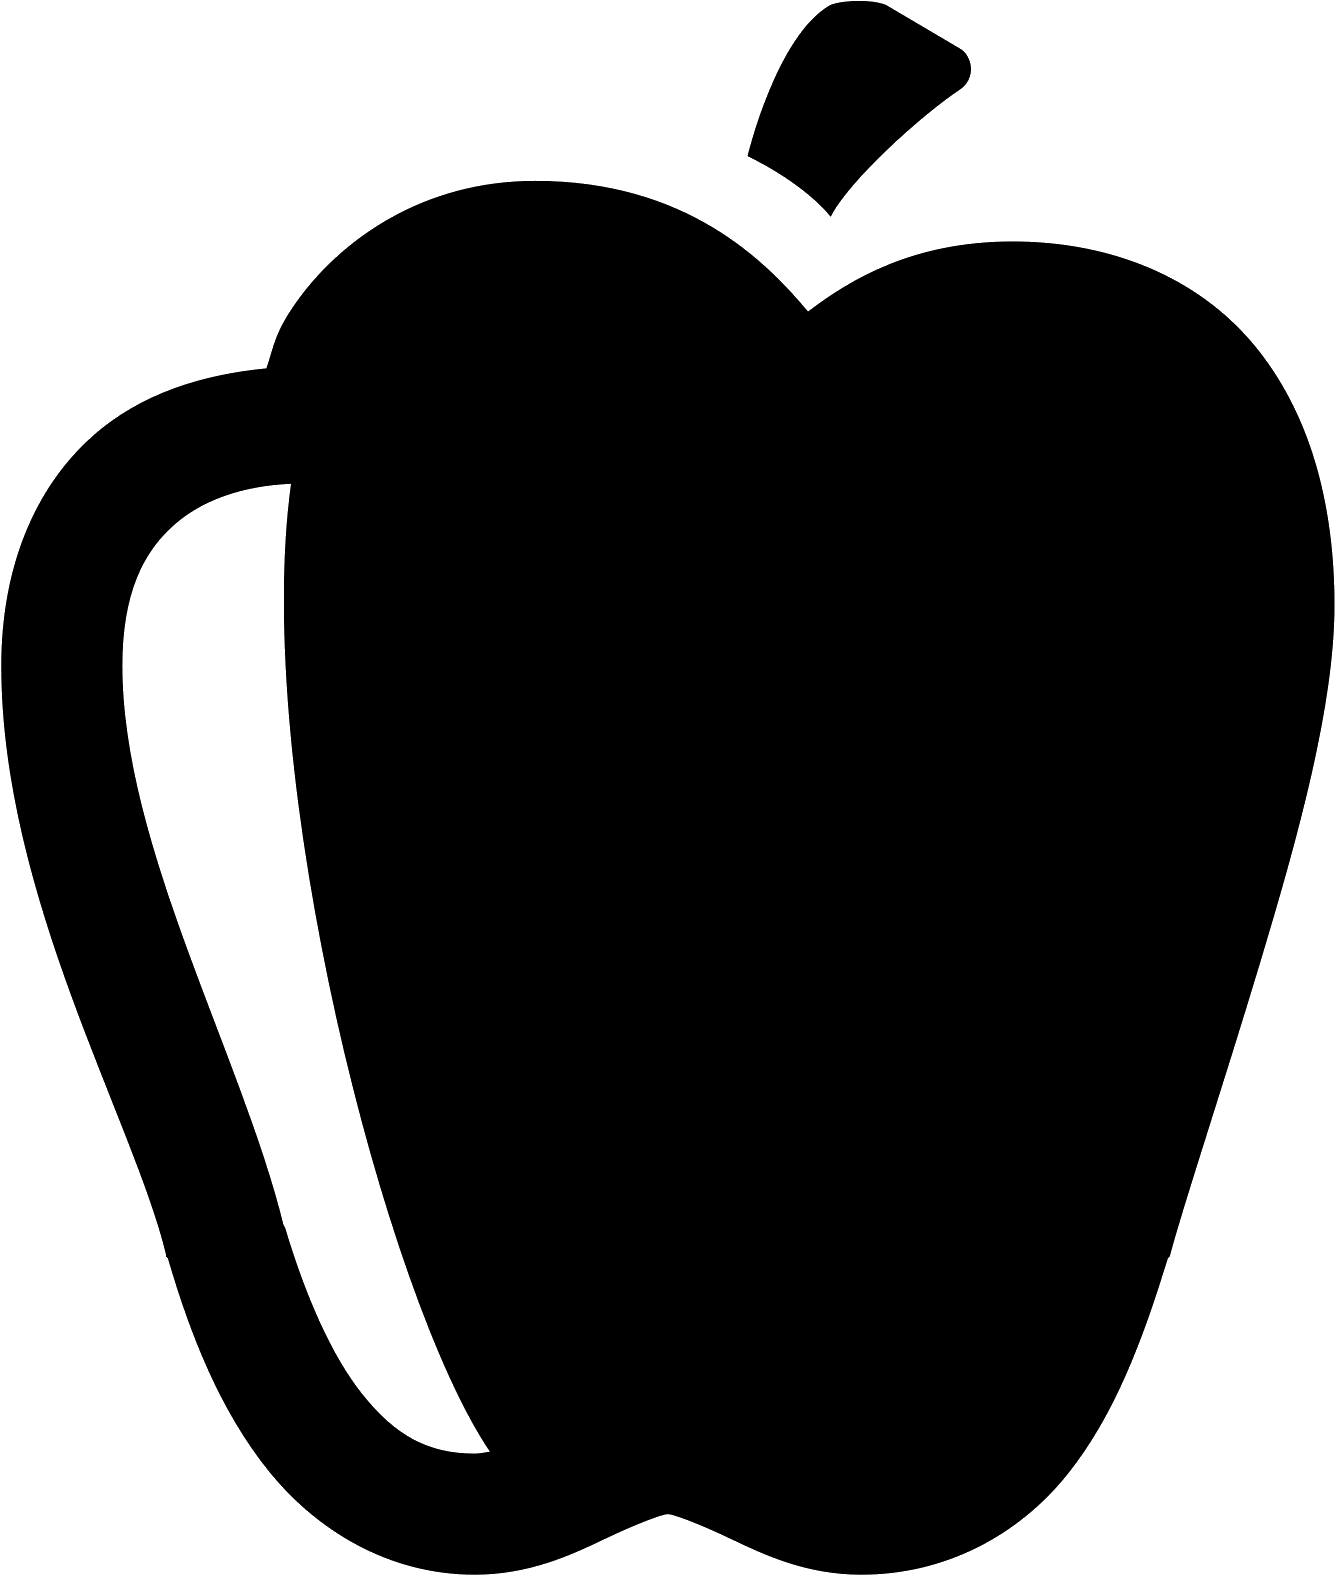 It's A Logo Of Paprika - Paprika Icon Png (1600x1600)